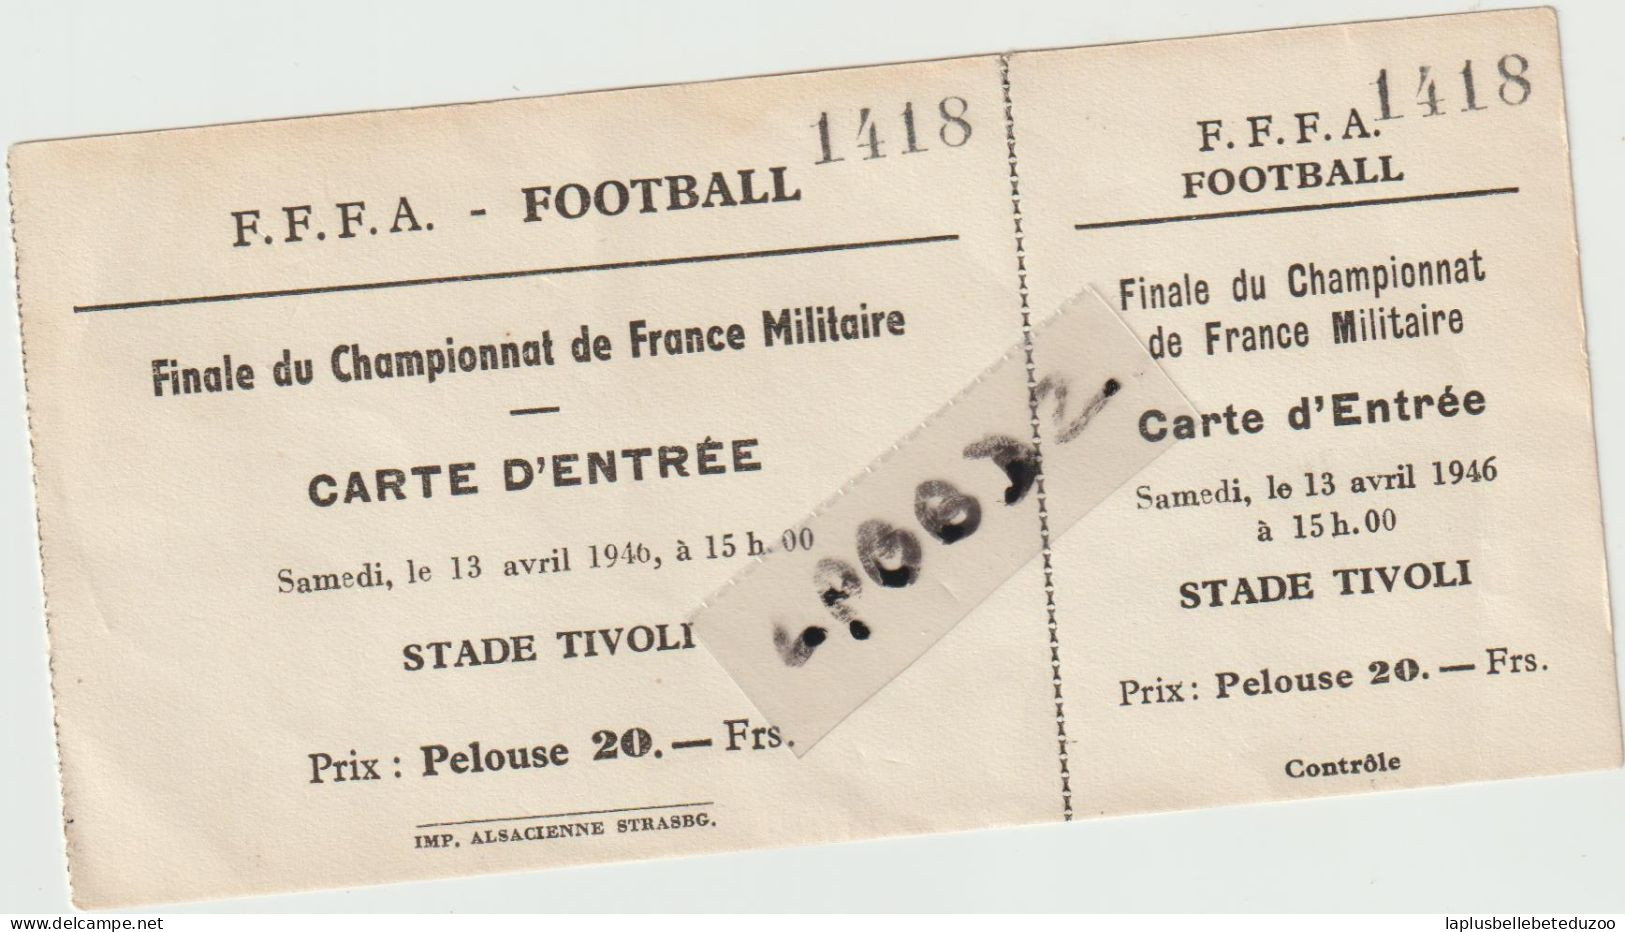 TICKET D'ENTREE - FOOTBALL - FINALE CHAMPIONNAT DE FRANCE MILITAIRE 1946 - Tickets - Vouchers